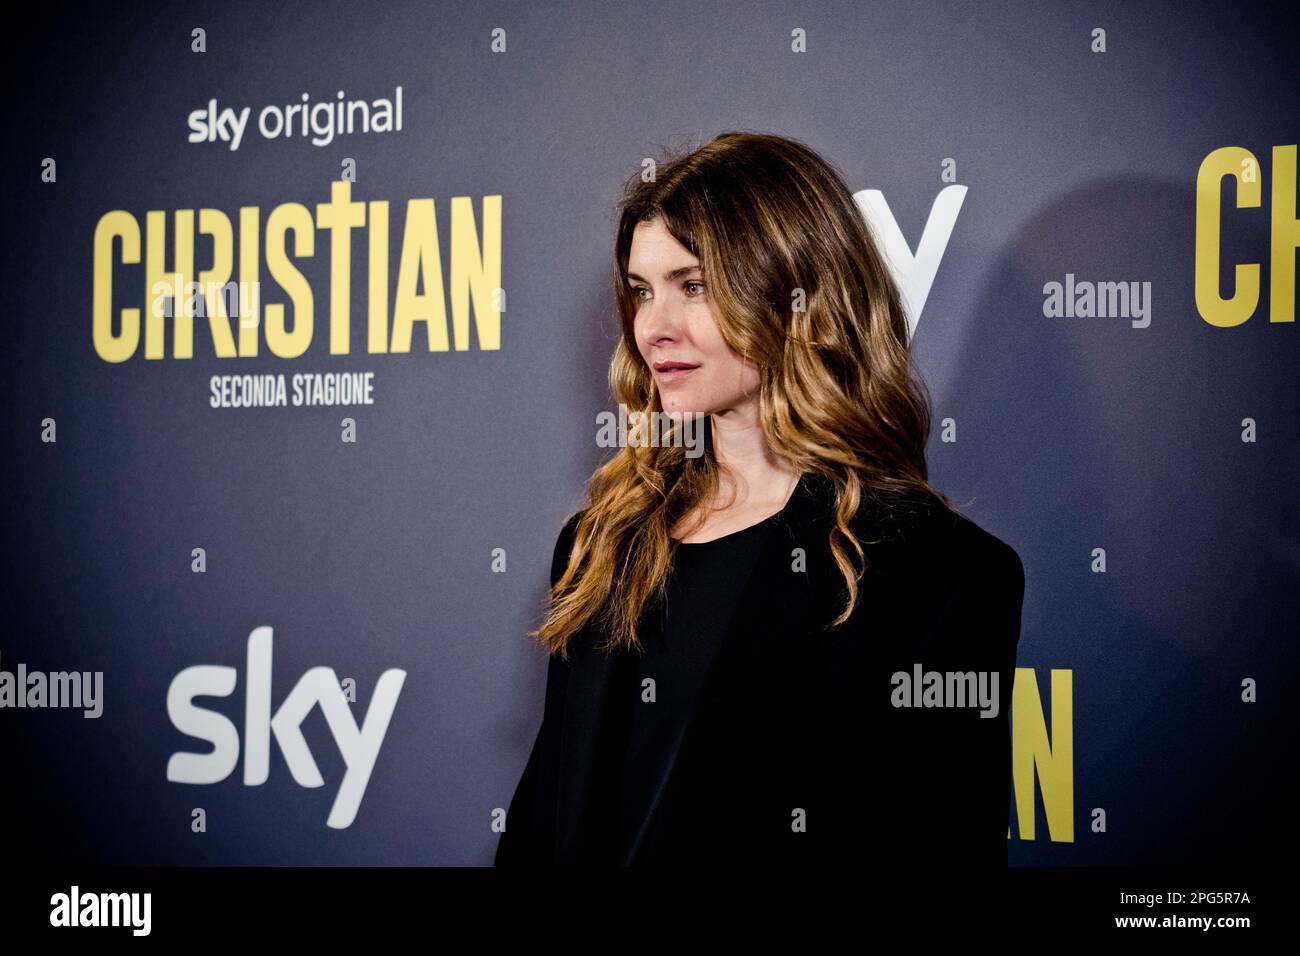 Rome, Italy, 20th March 2023, Vittoria Puccini attends the premiere of 'Christian - seconda stagione' at Cinema Barberini (Photo credits: Giovanna Ono Stock Photo